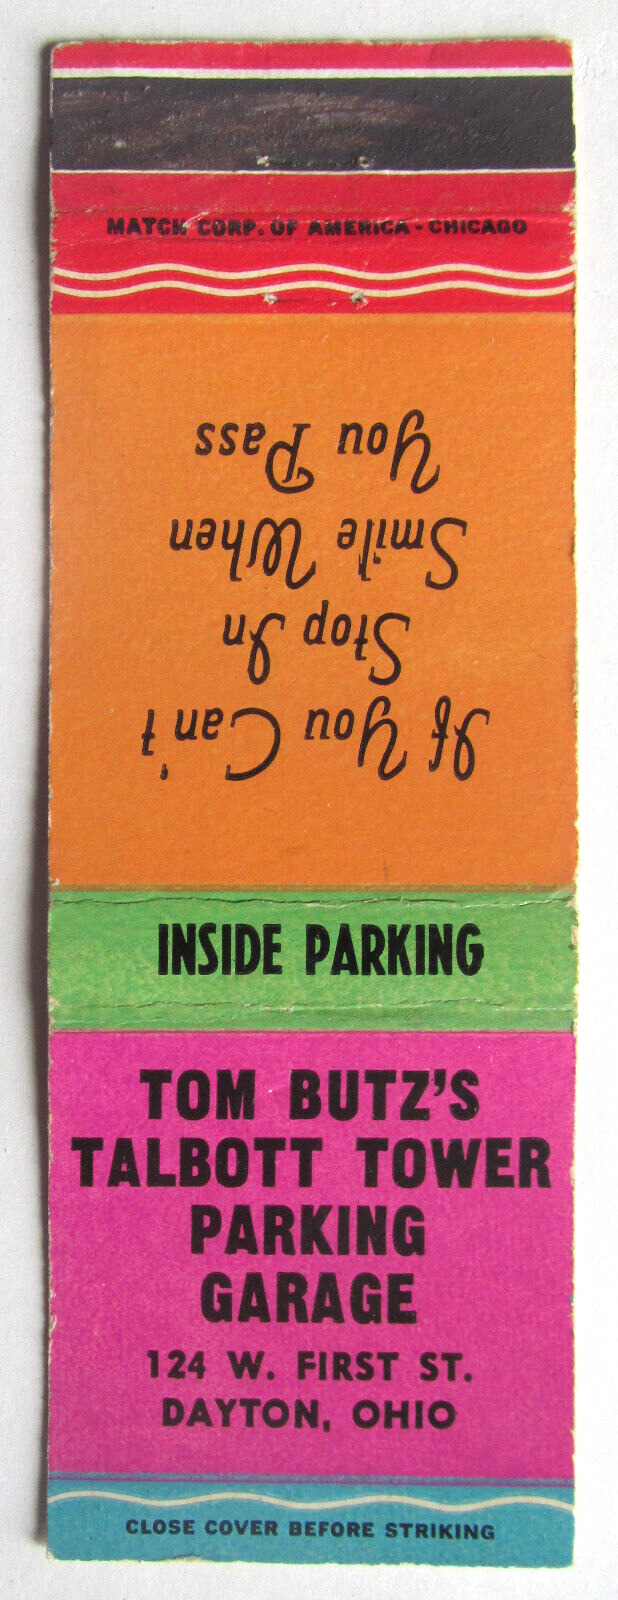 Tom Butz's Talbott Tower Parking Garage - Dayton, Ohio 20 Strike Matchbook Cover